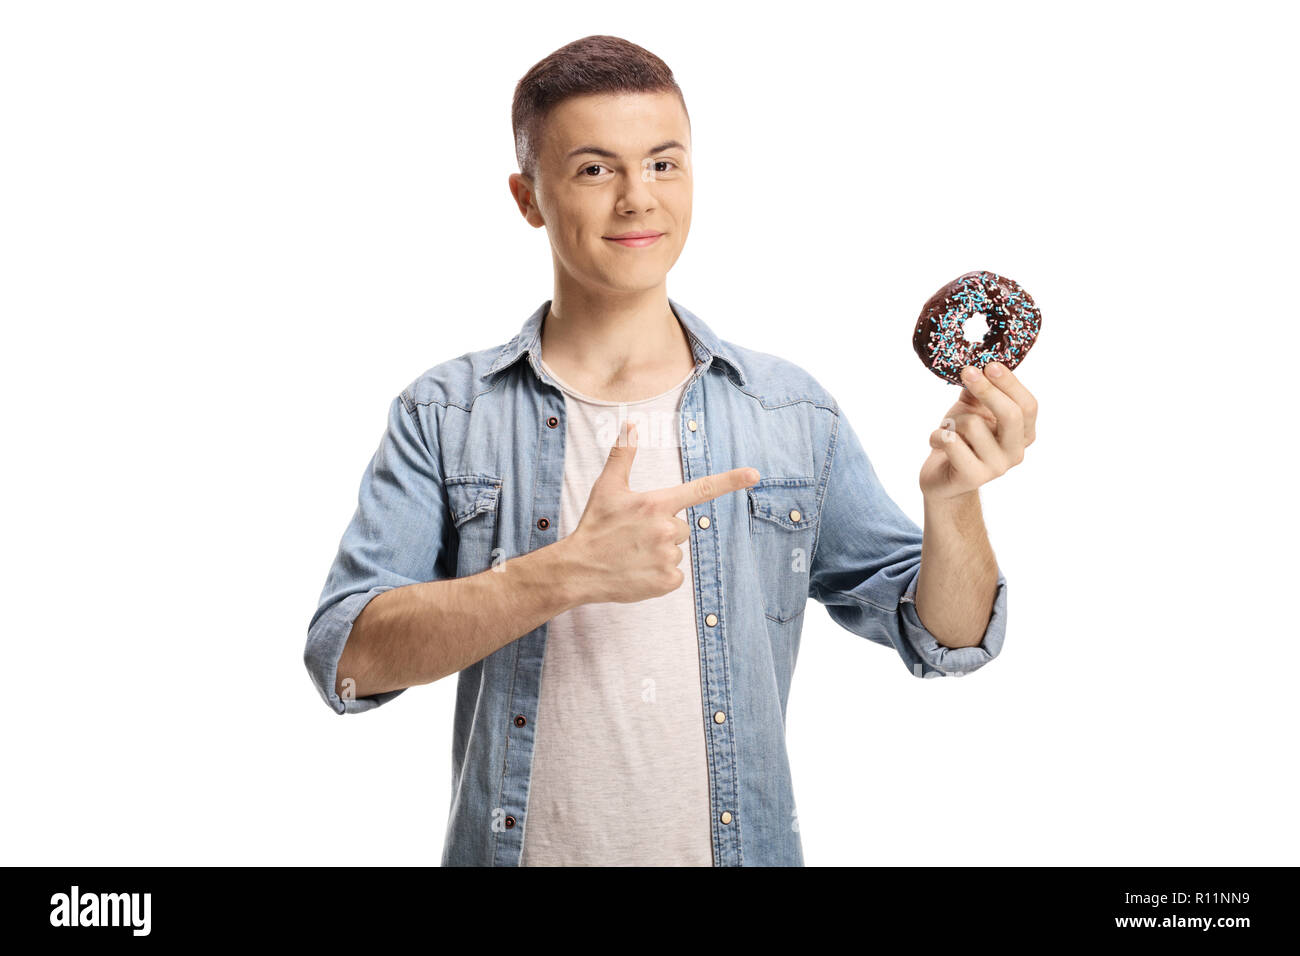 Junge Mann hält eine Schokolade Donut und zeigt auf weißem Hintergrund Stockfoto